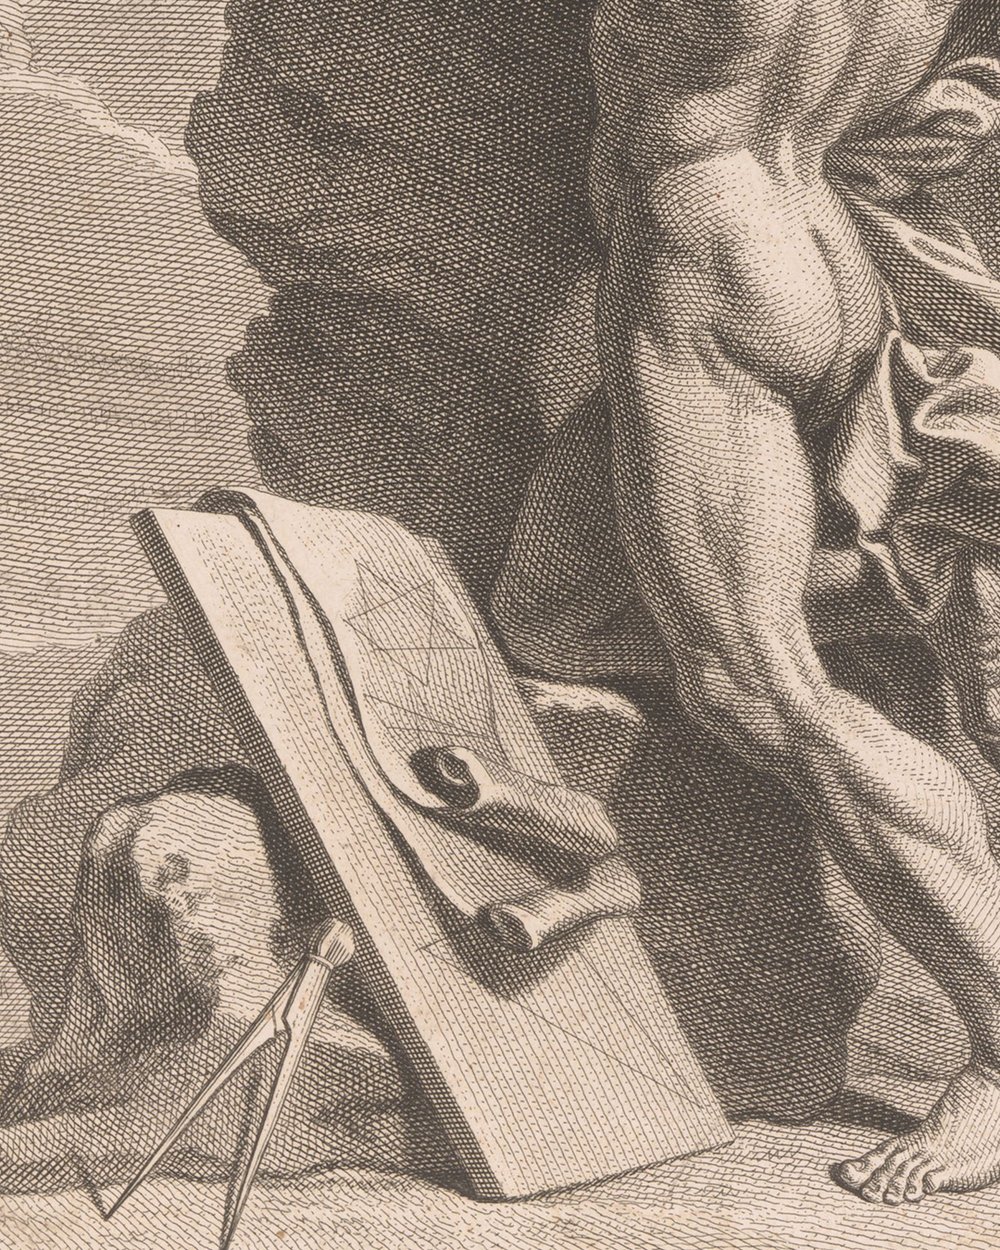 ''Atlas bears the firmament'' (1679 - 1728)